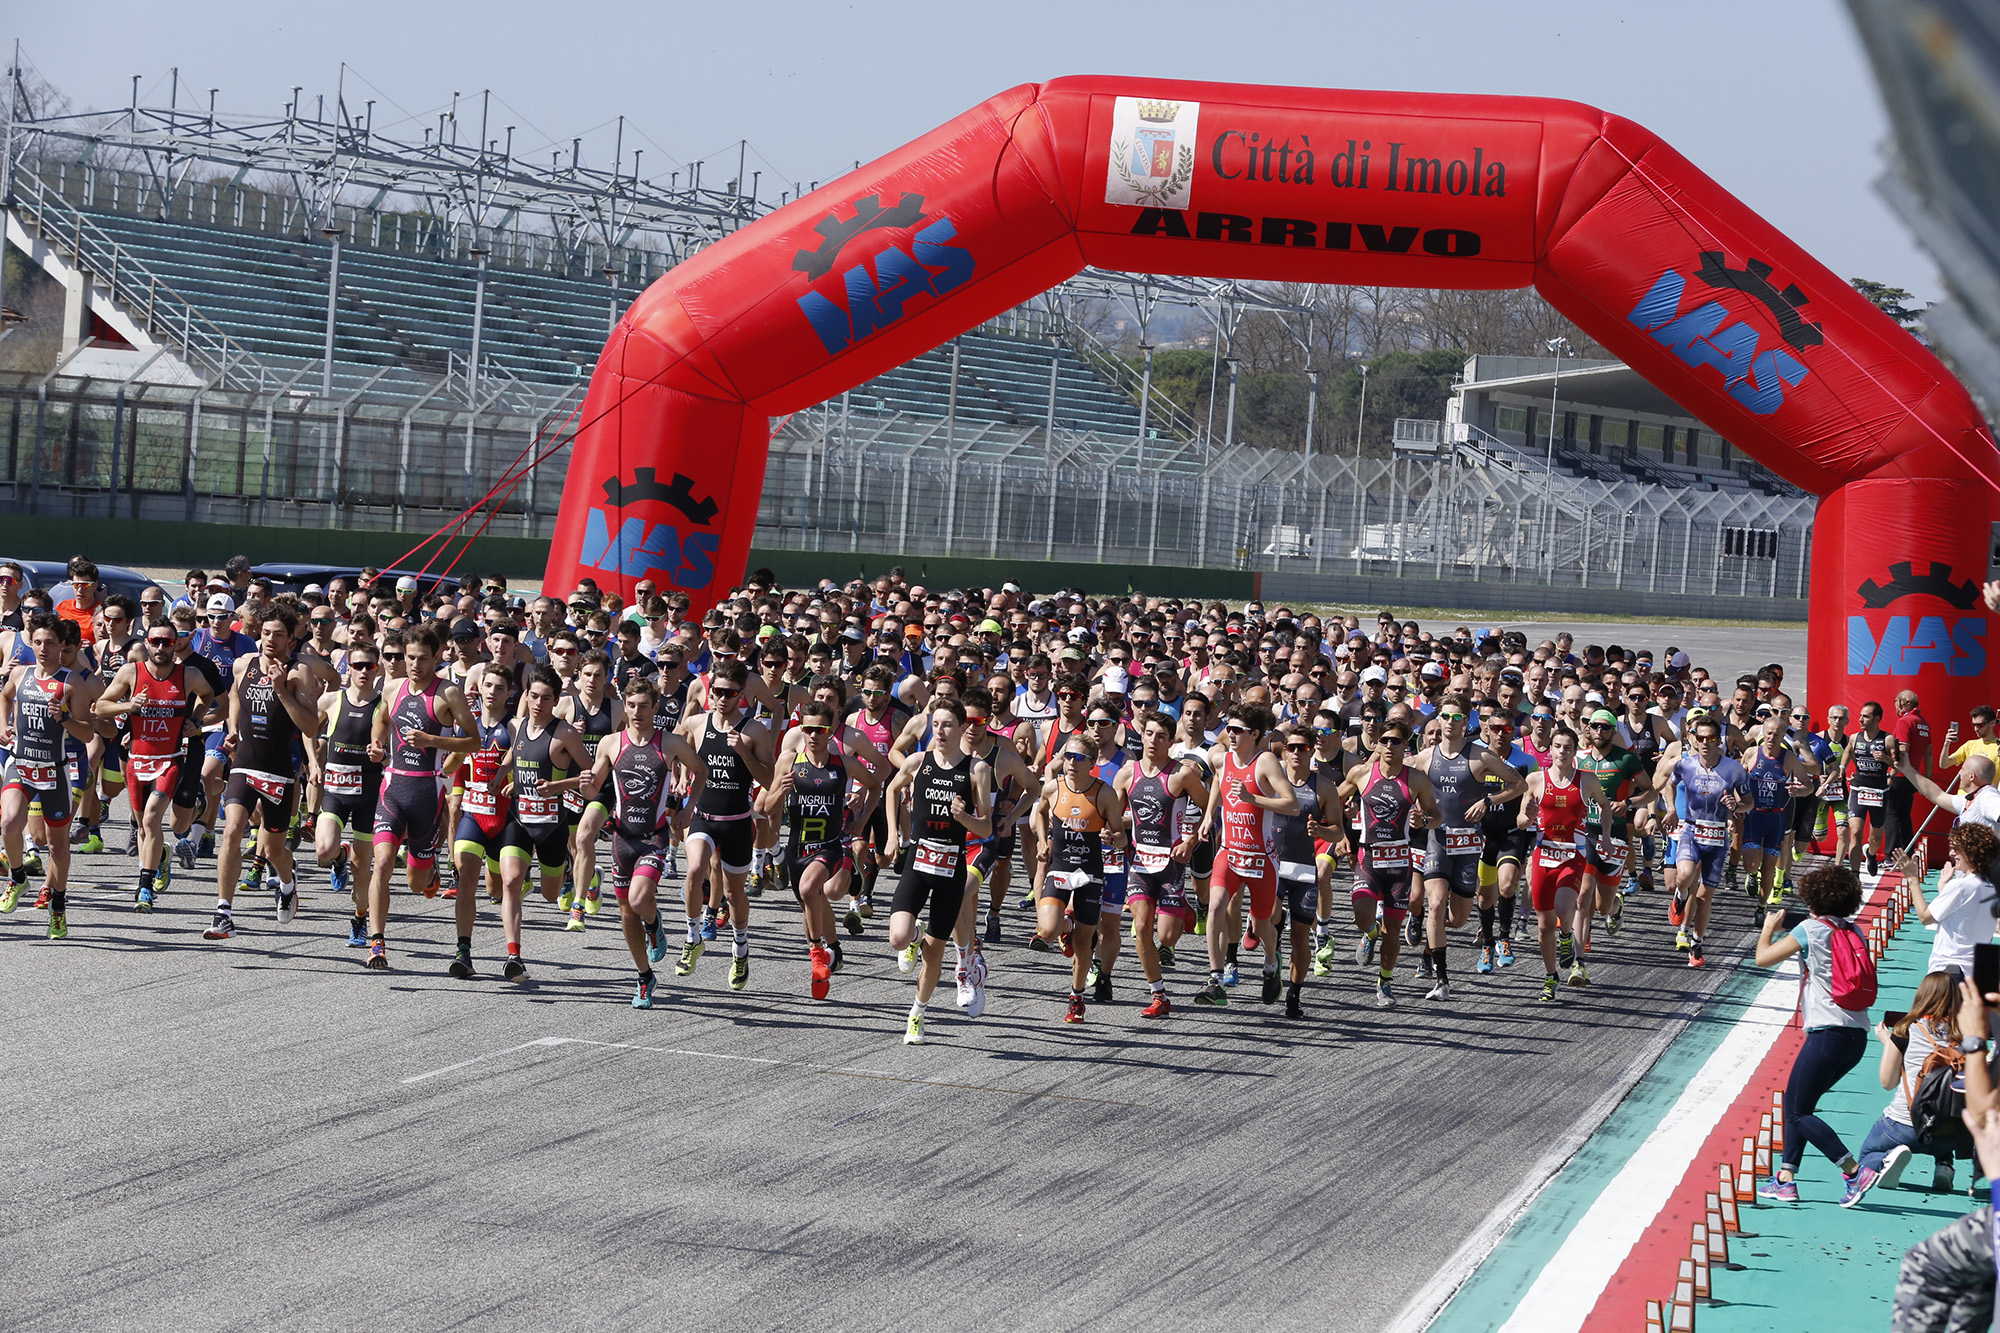 Prorogata al 14 marzo la scadenza iscrizioni dei Campionati Italiani di Duathlon Sprint ad Imola